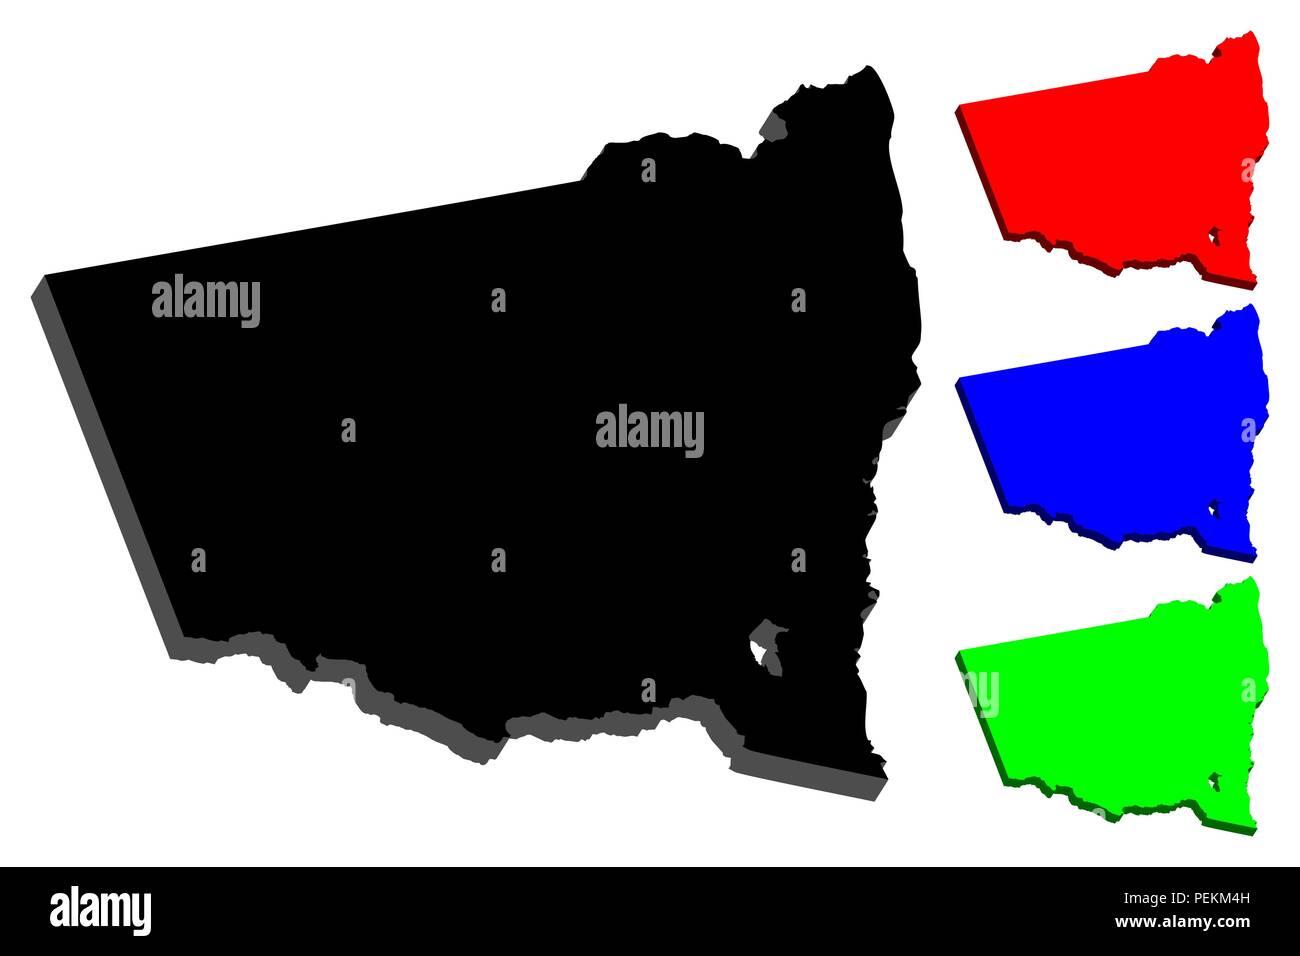 Mappa 3D del Nuovo Galles del Sud (Stati australiani e territori, NSW) - nero, rosso, blu e verde - illustrazione vettoriale Illustrazione Vettoriale